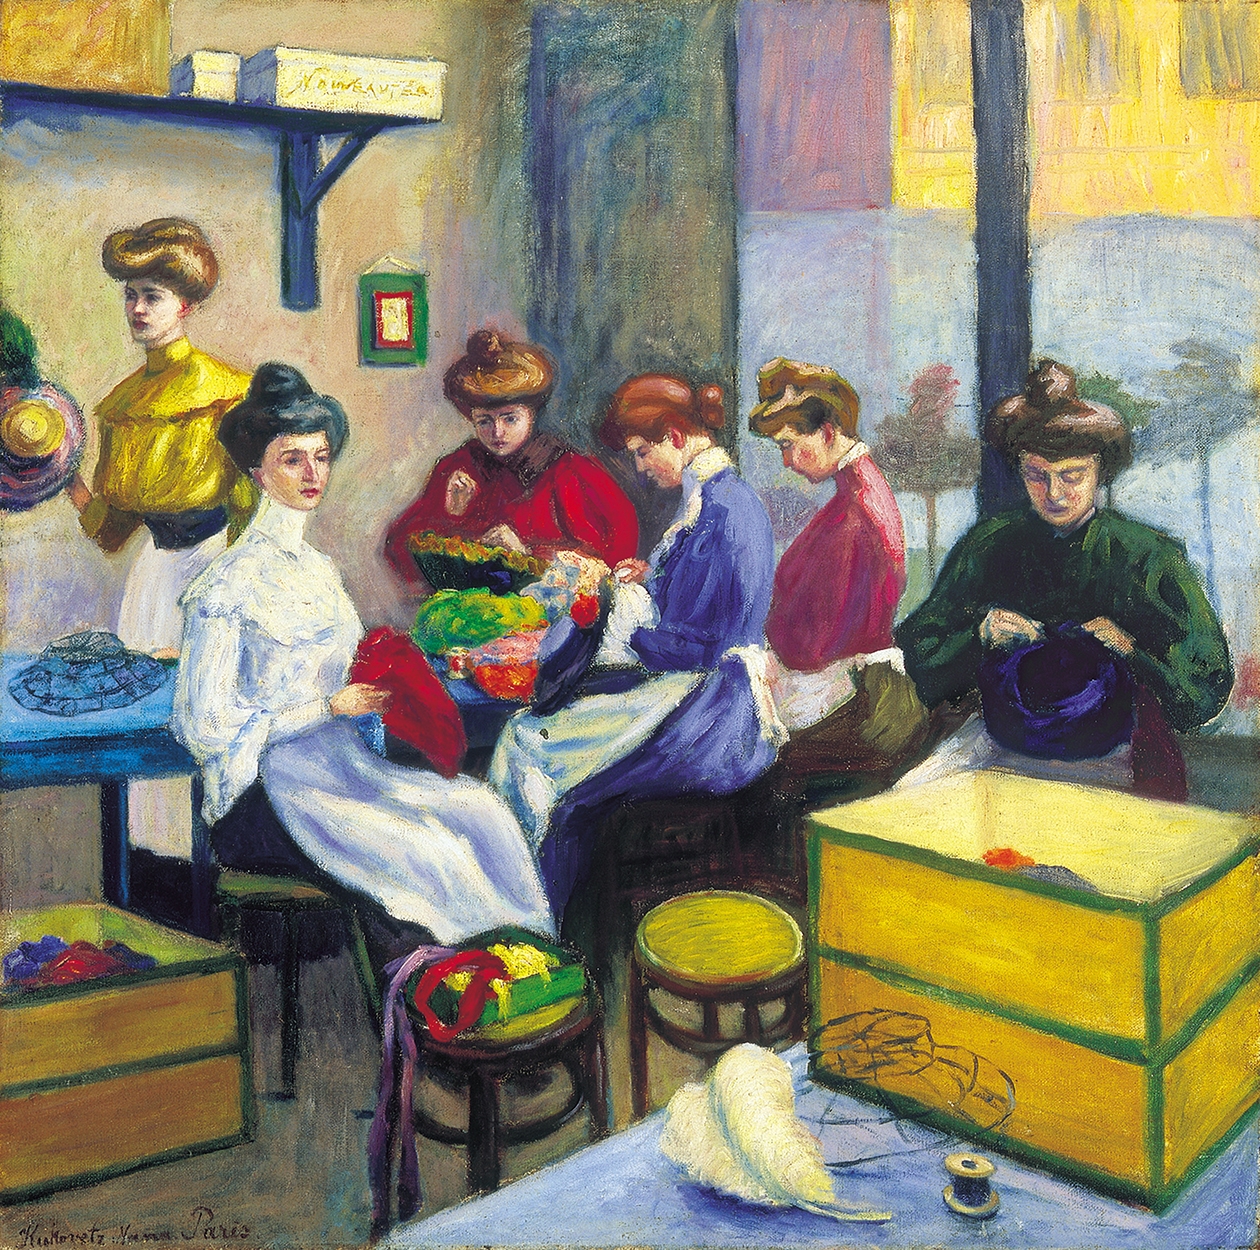 Kukovetz Nana (1885-1919) Millinery in Paris, around 1913